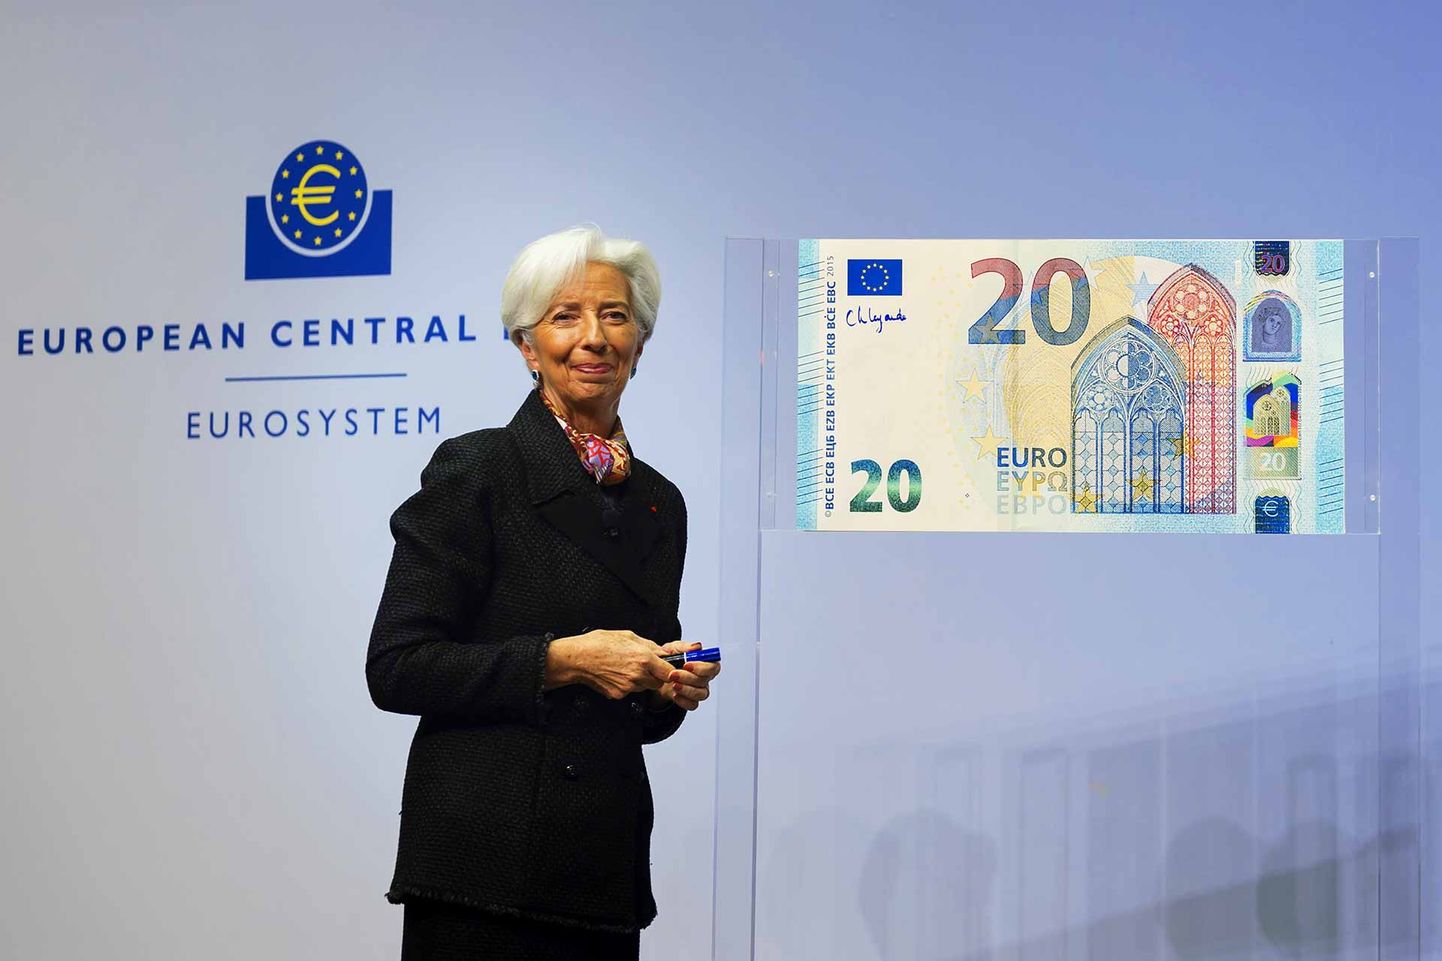 NELJAS: Saksamaal Frankfurtis asuva Euroopa Keskpanga praegune juht on prantslanna Christine Lagarde. Ta on neljas inimene, kes on eurorahatähtedele oma allkirja andnud. Enne teda on seda teinud hollandlane Wim Duisenberg, prantslane Jean-Claude Trichet ja itaallane Mario Draghi.